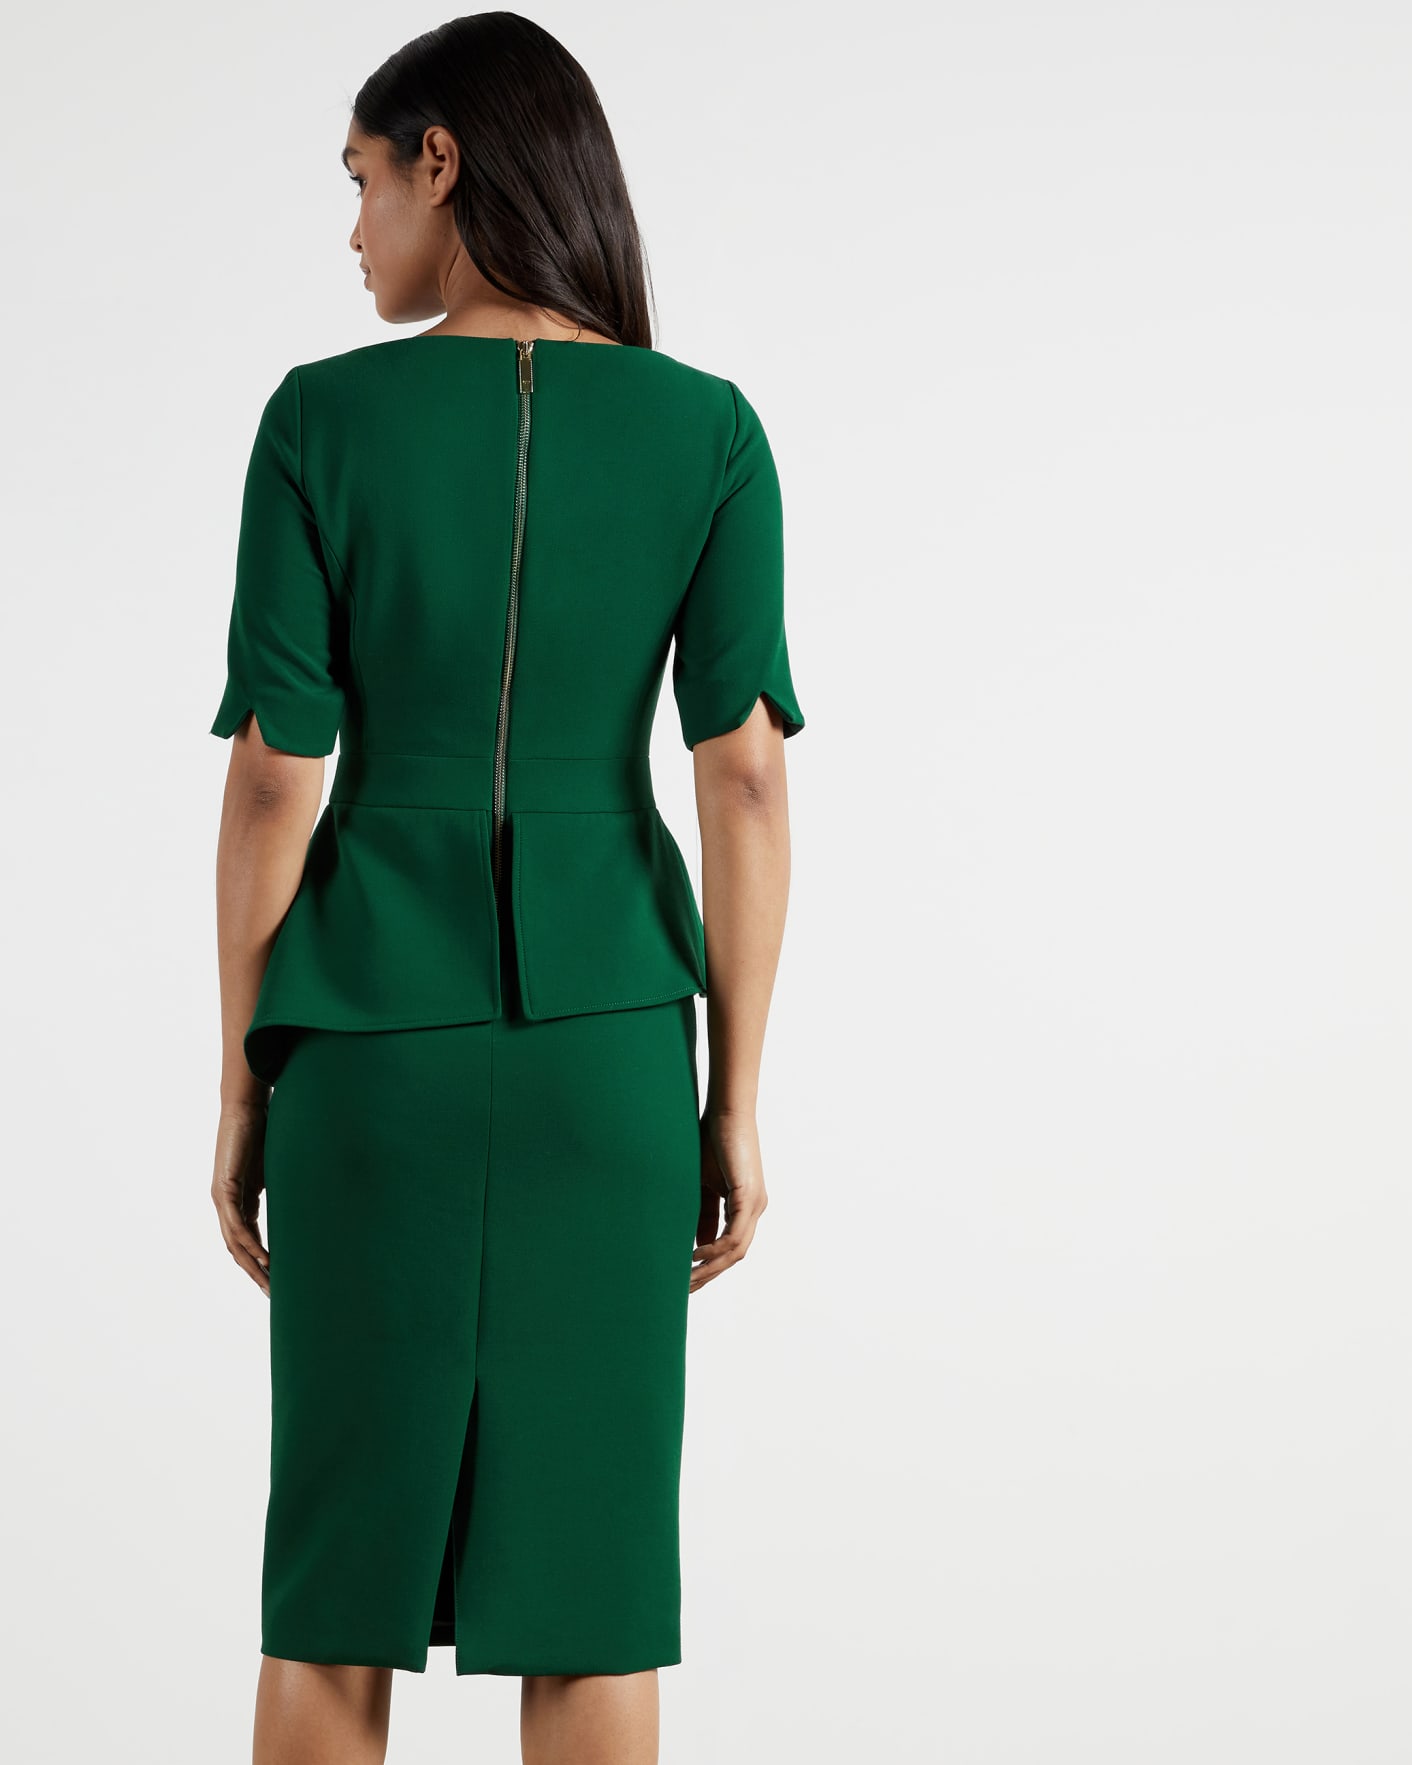 Dark Green Peplum Detail Short Sleeve Dress Ted Baker